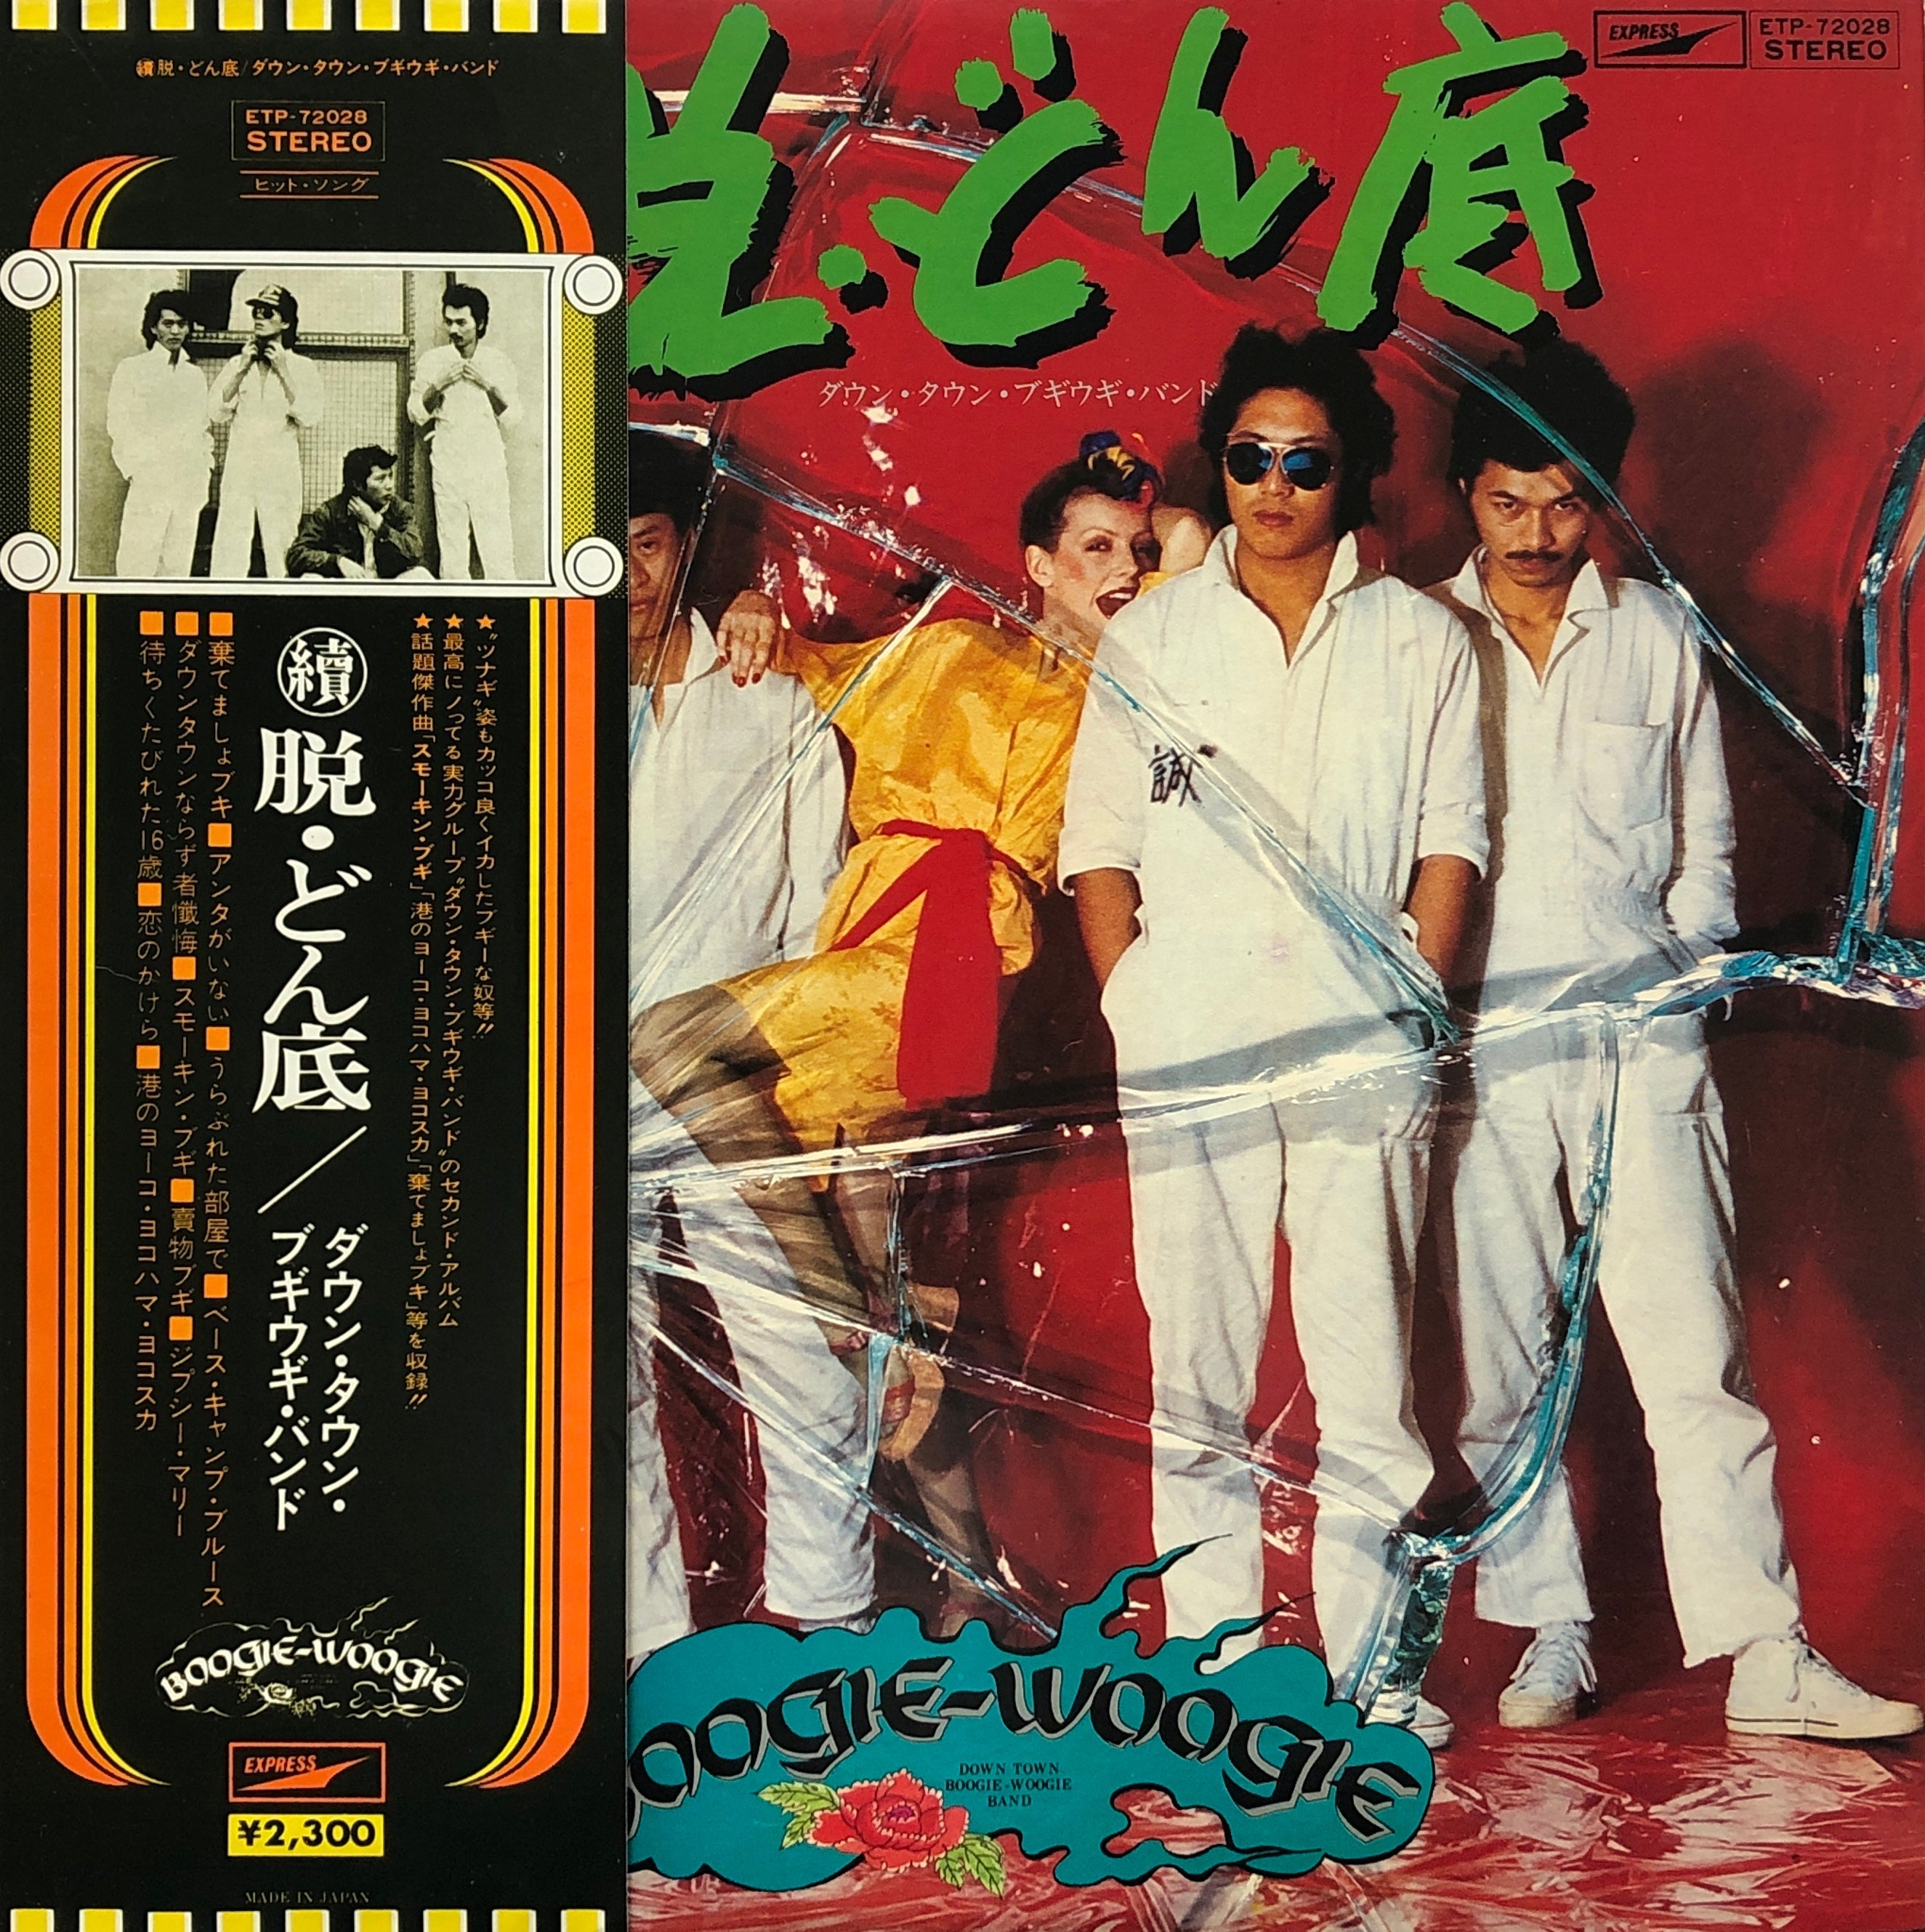 ダウン・タウン・ブギウギ・バンド「EMIイヤーズBOX 1974-1979」